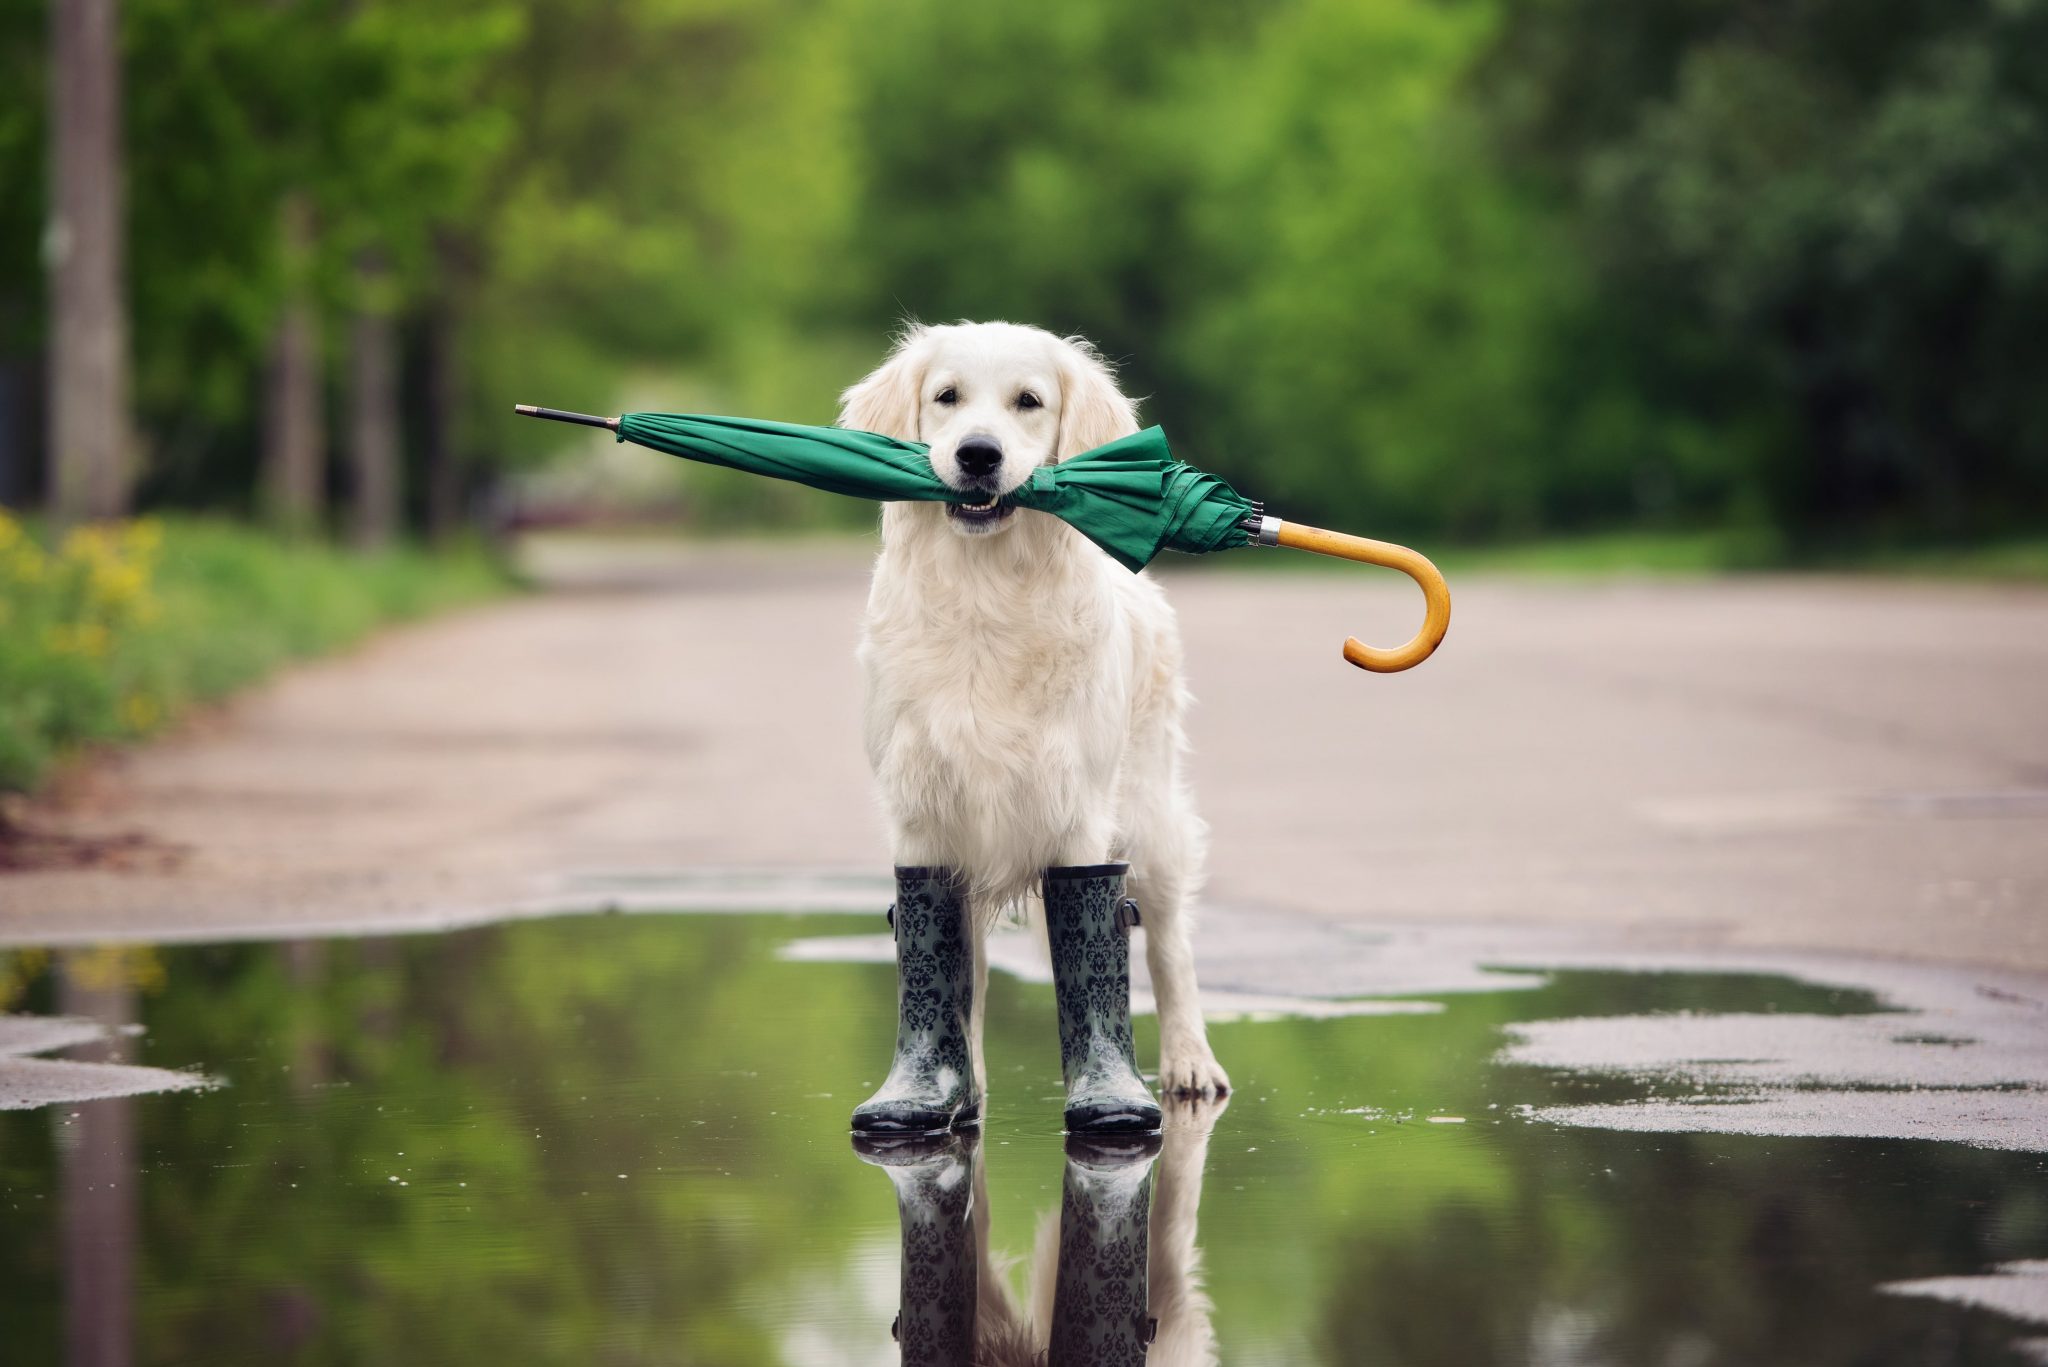 2022新作モデル 雨の日の散歩も楽しく快適 お顔もよく見えるクリア素材は ワンちゃんにも安全 安心 雨をしっかり除けてくれる素材はお手入れ簡単 小型犬～中型犬にピッタリサイズです ペット カッパ 犬 レインコート ポンチョ レインポンチョ 雨 コート 犬用 ペット用 ペット用レインコート 小型犬 中型犬 ビニール かっぱ 合羽 雨合羽 いぬ イヌ 犬のカッパ ペットのカッパ 雨具 ドッグ ウェア 透明 クリア 着せやすい 犬服 pet69 tepsa.com.pe